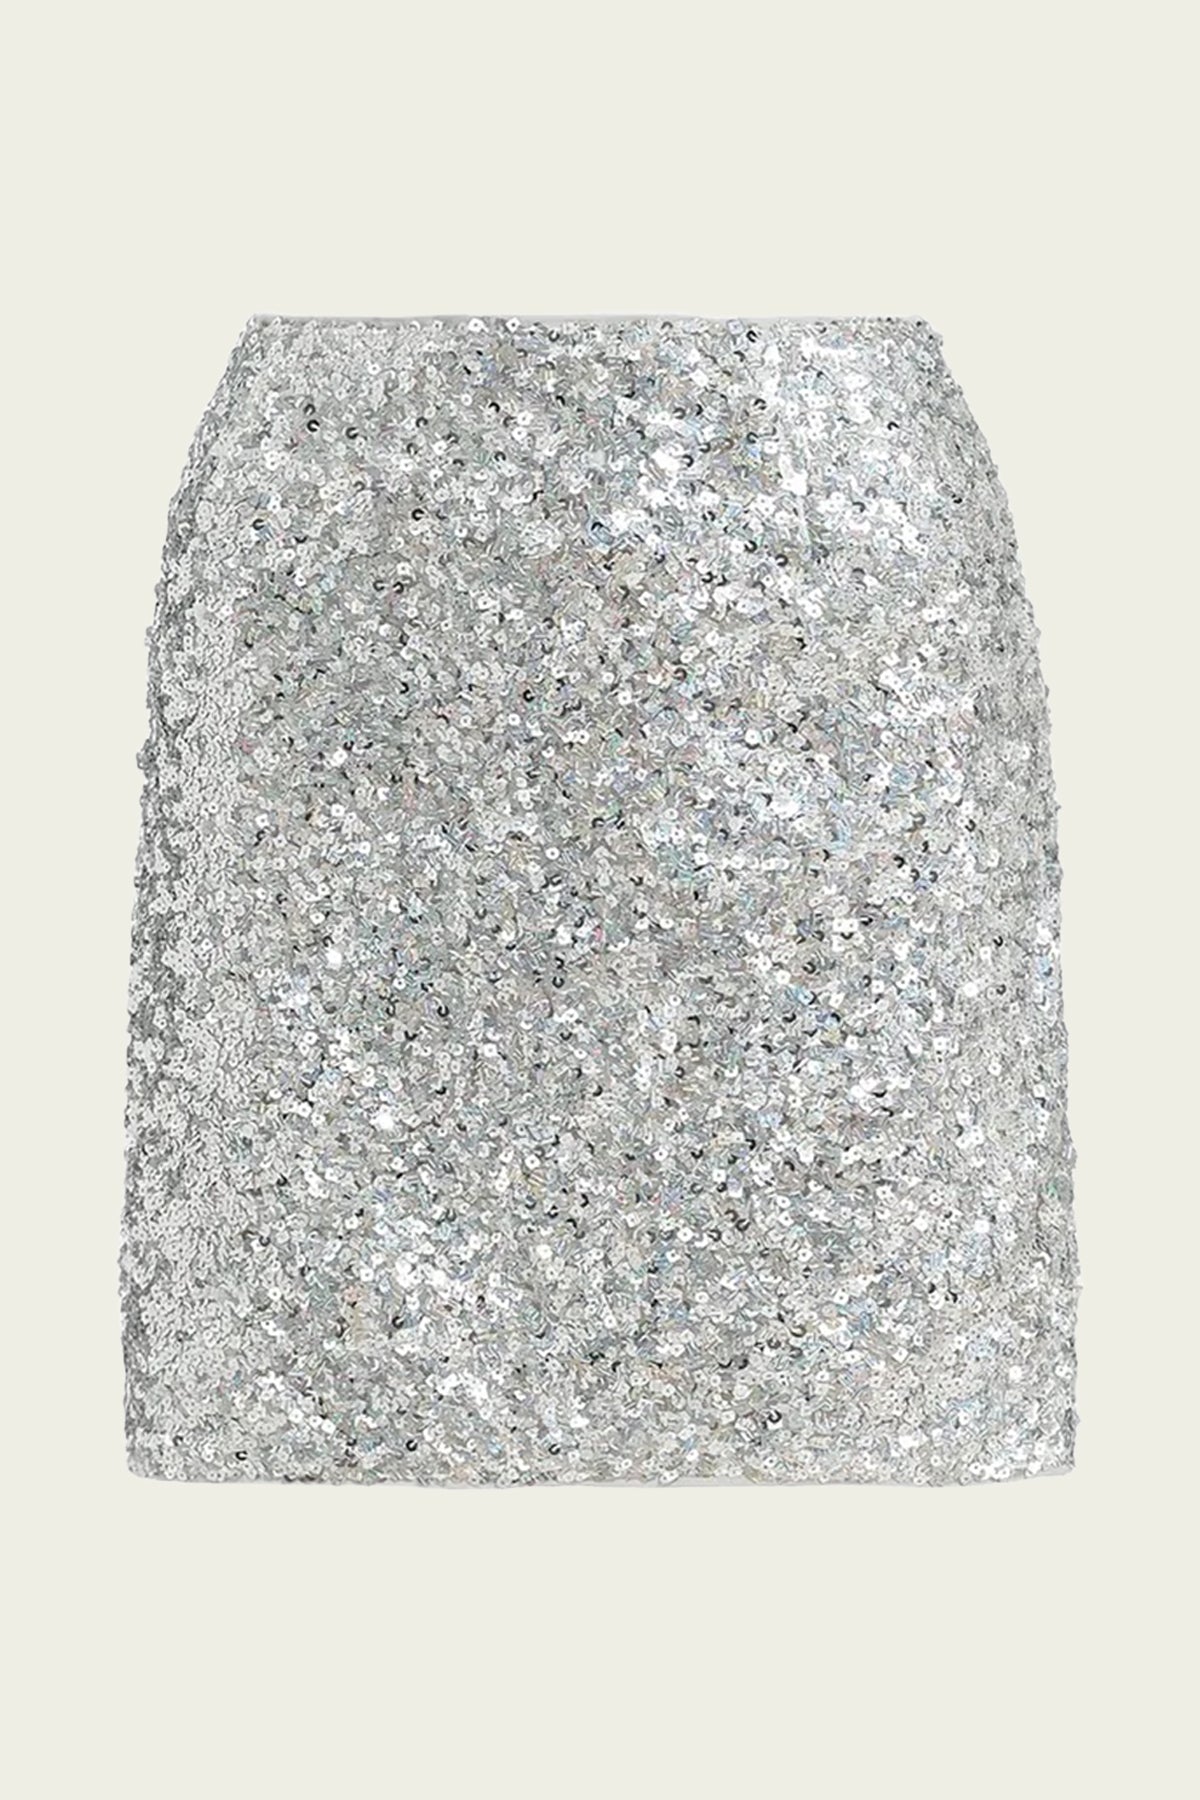 Ferlin Sequin - Embellished Mini Skirt in Silver - shop - olivia.com